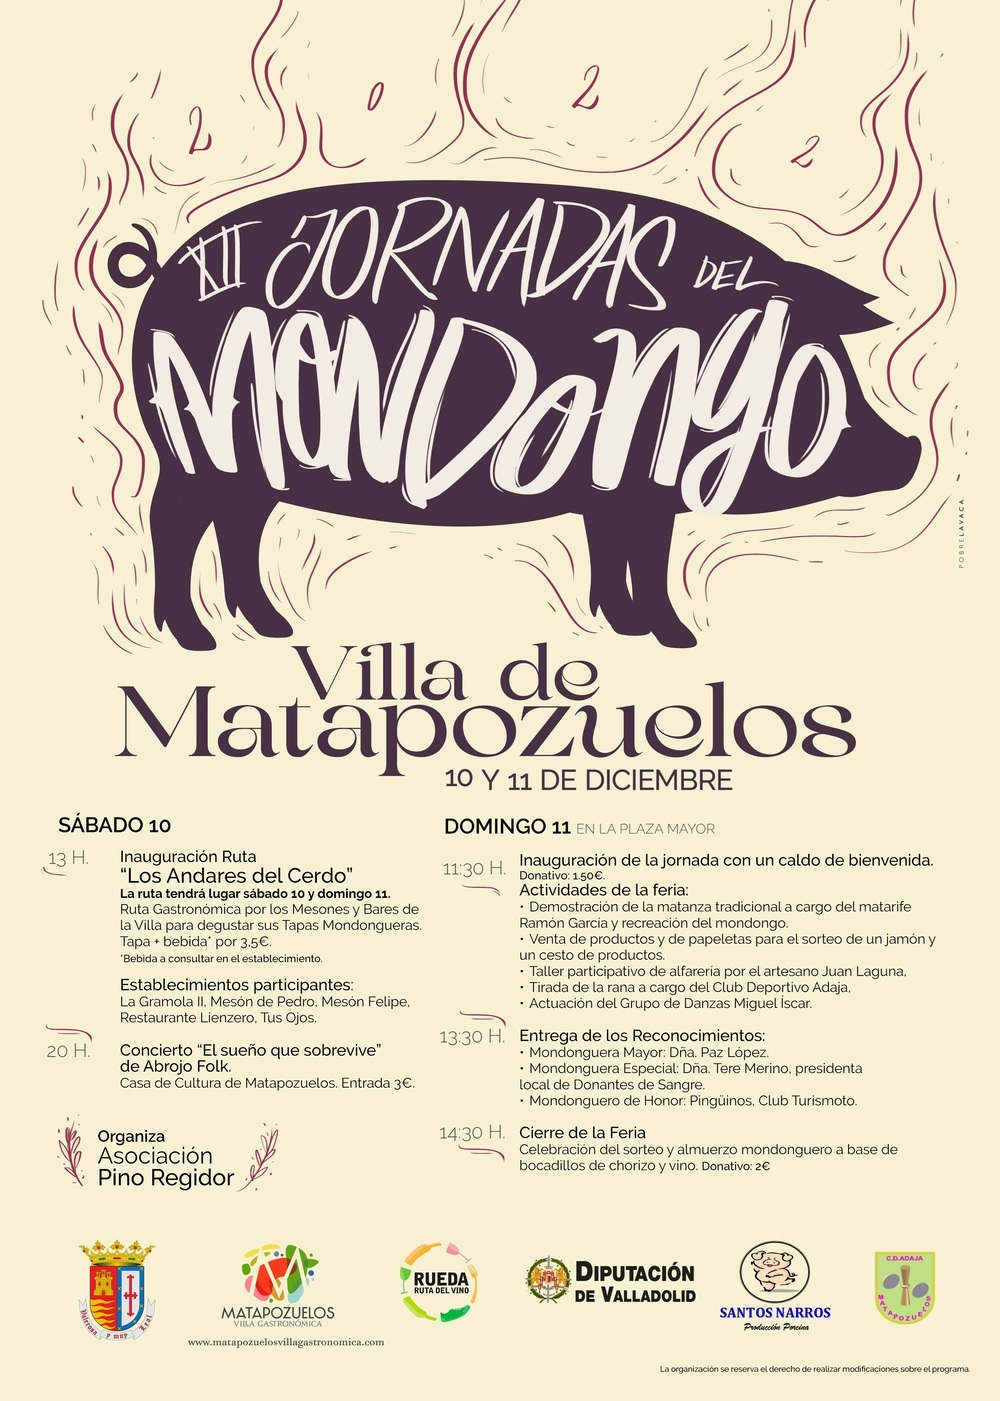 Cartel de las XII Jornadas del Mondongo de Matapozuelos.